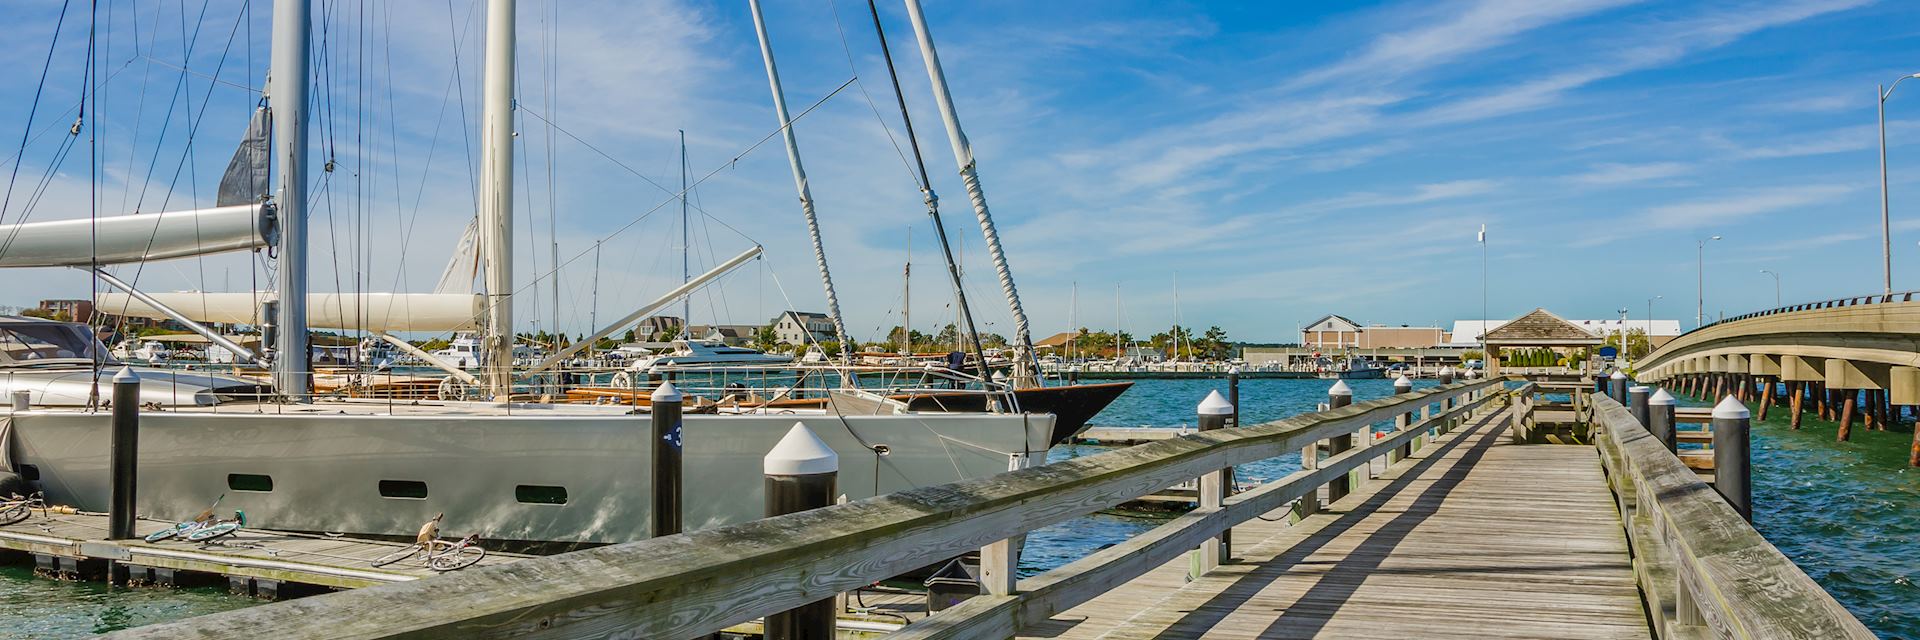 Yachts in Newport Harbor